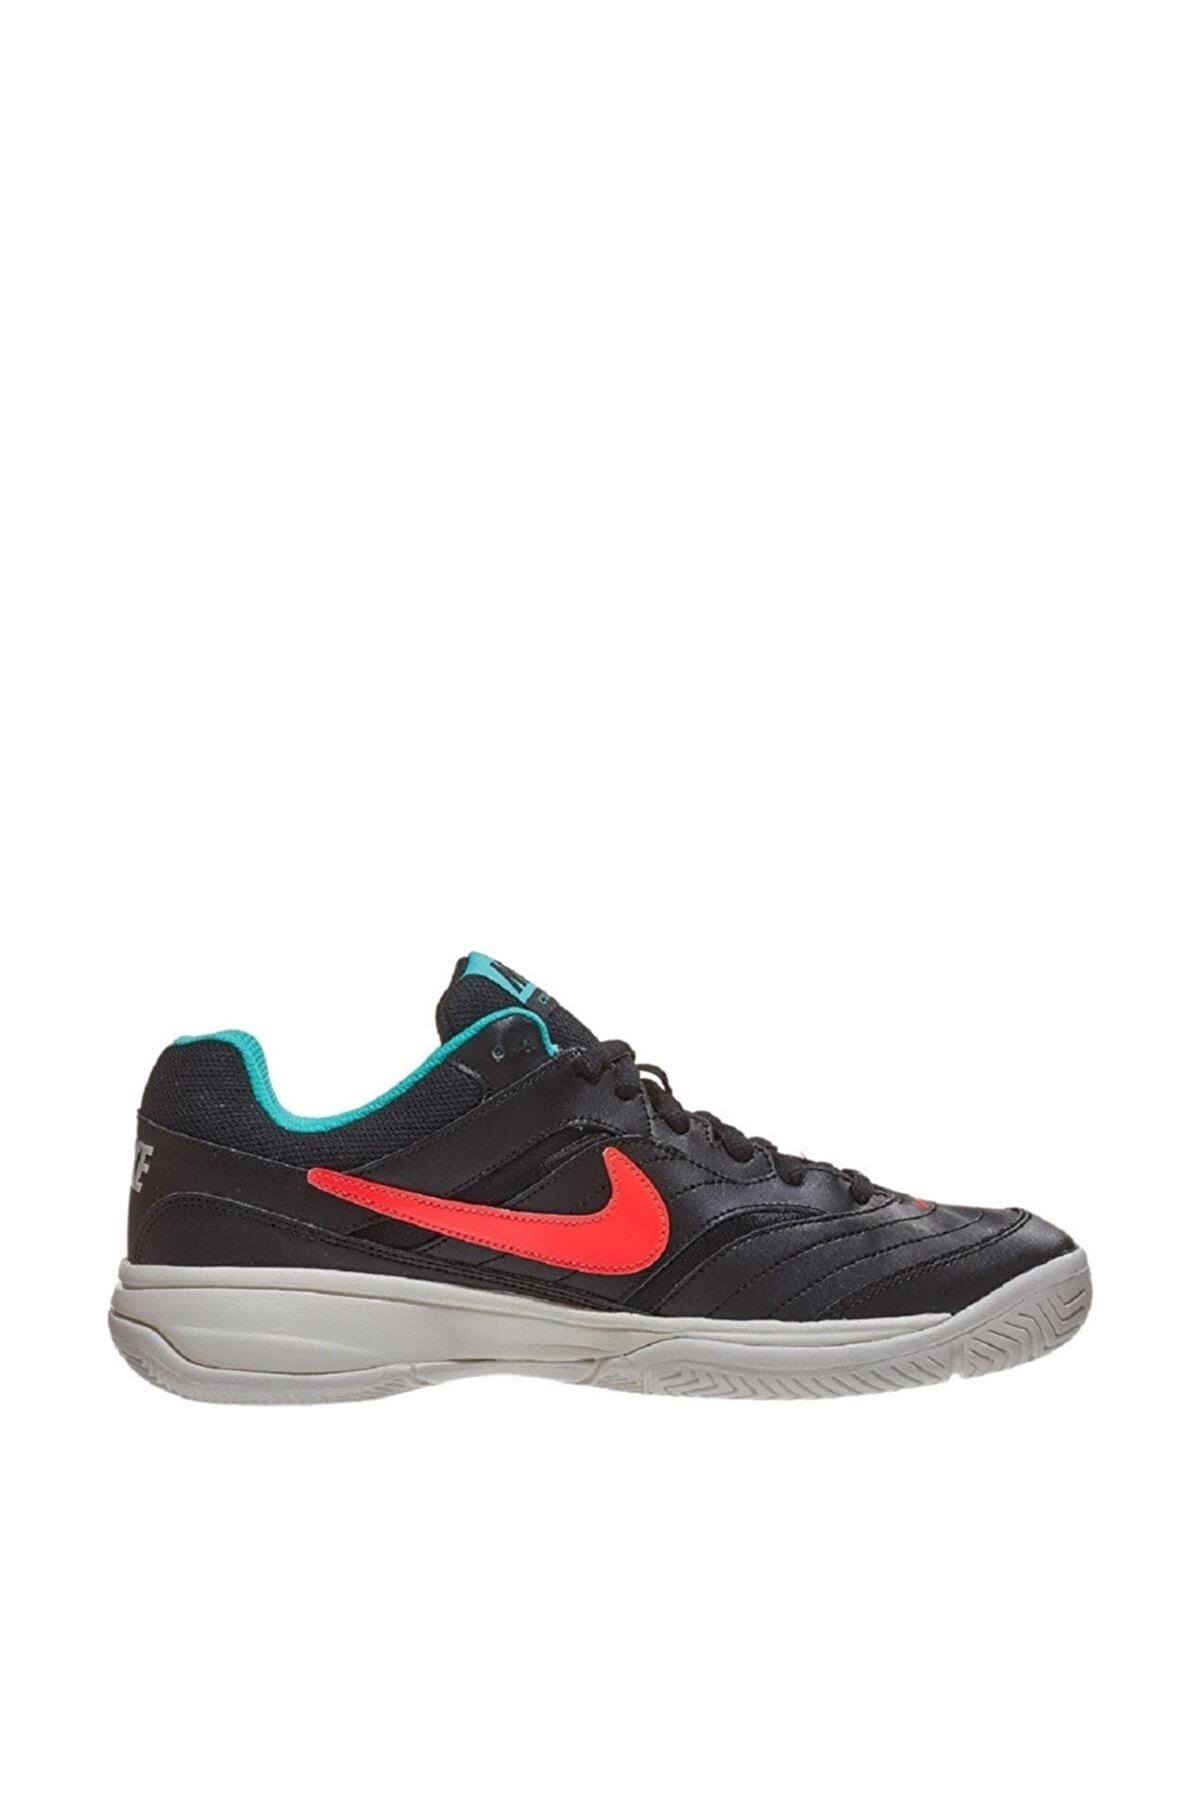 Nike Court Lite Erkek Tenis Ayakkabısı - 845021-008